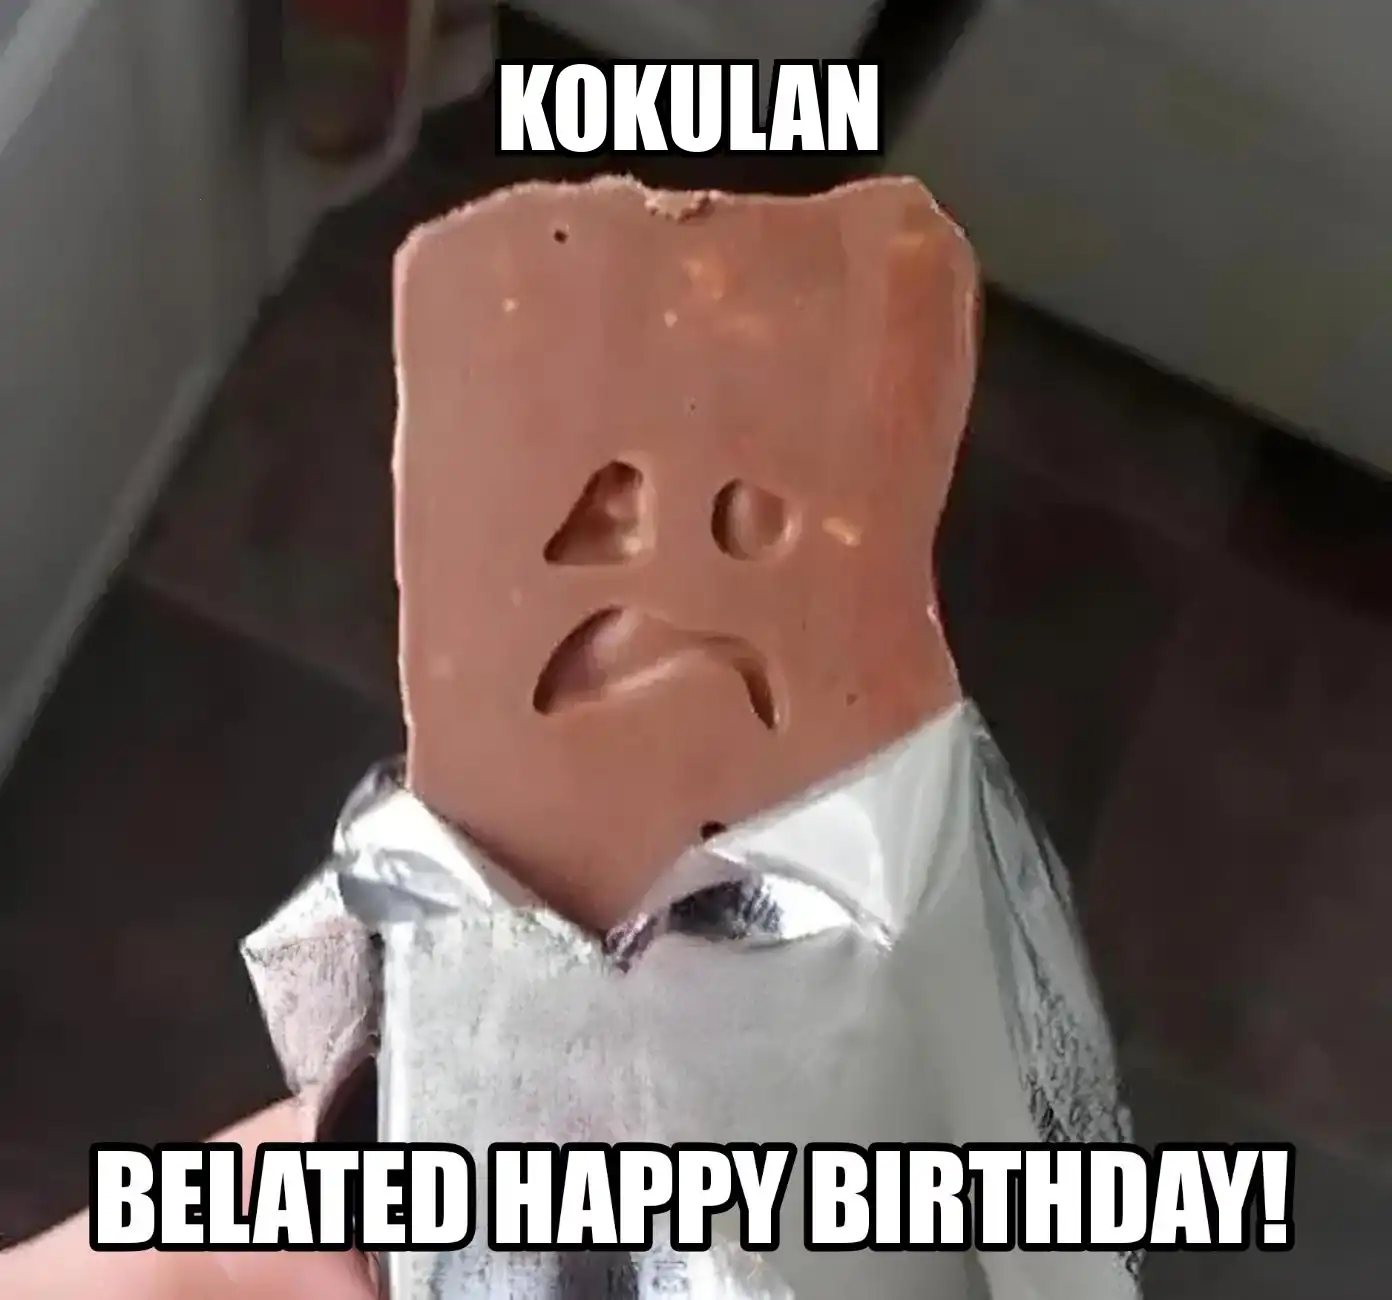 Happy Birthday Kokulan Belated Happy Birthday Meme